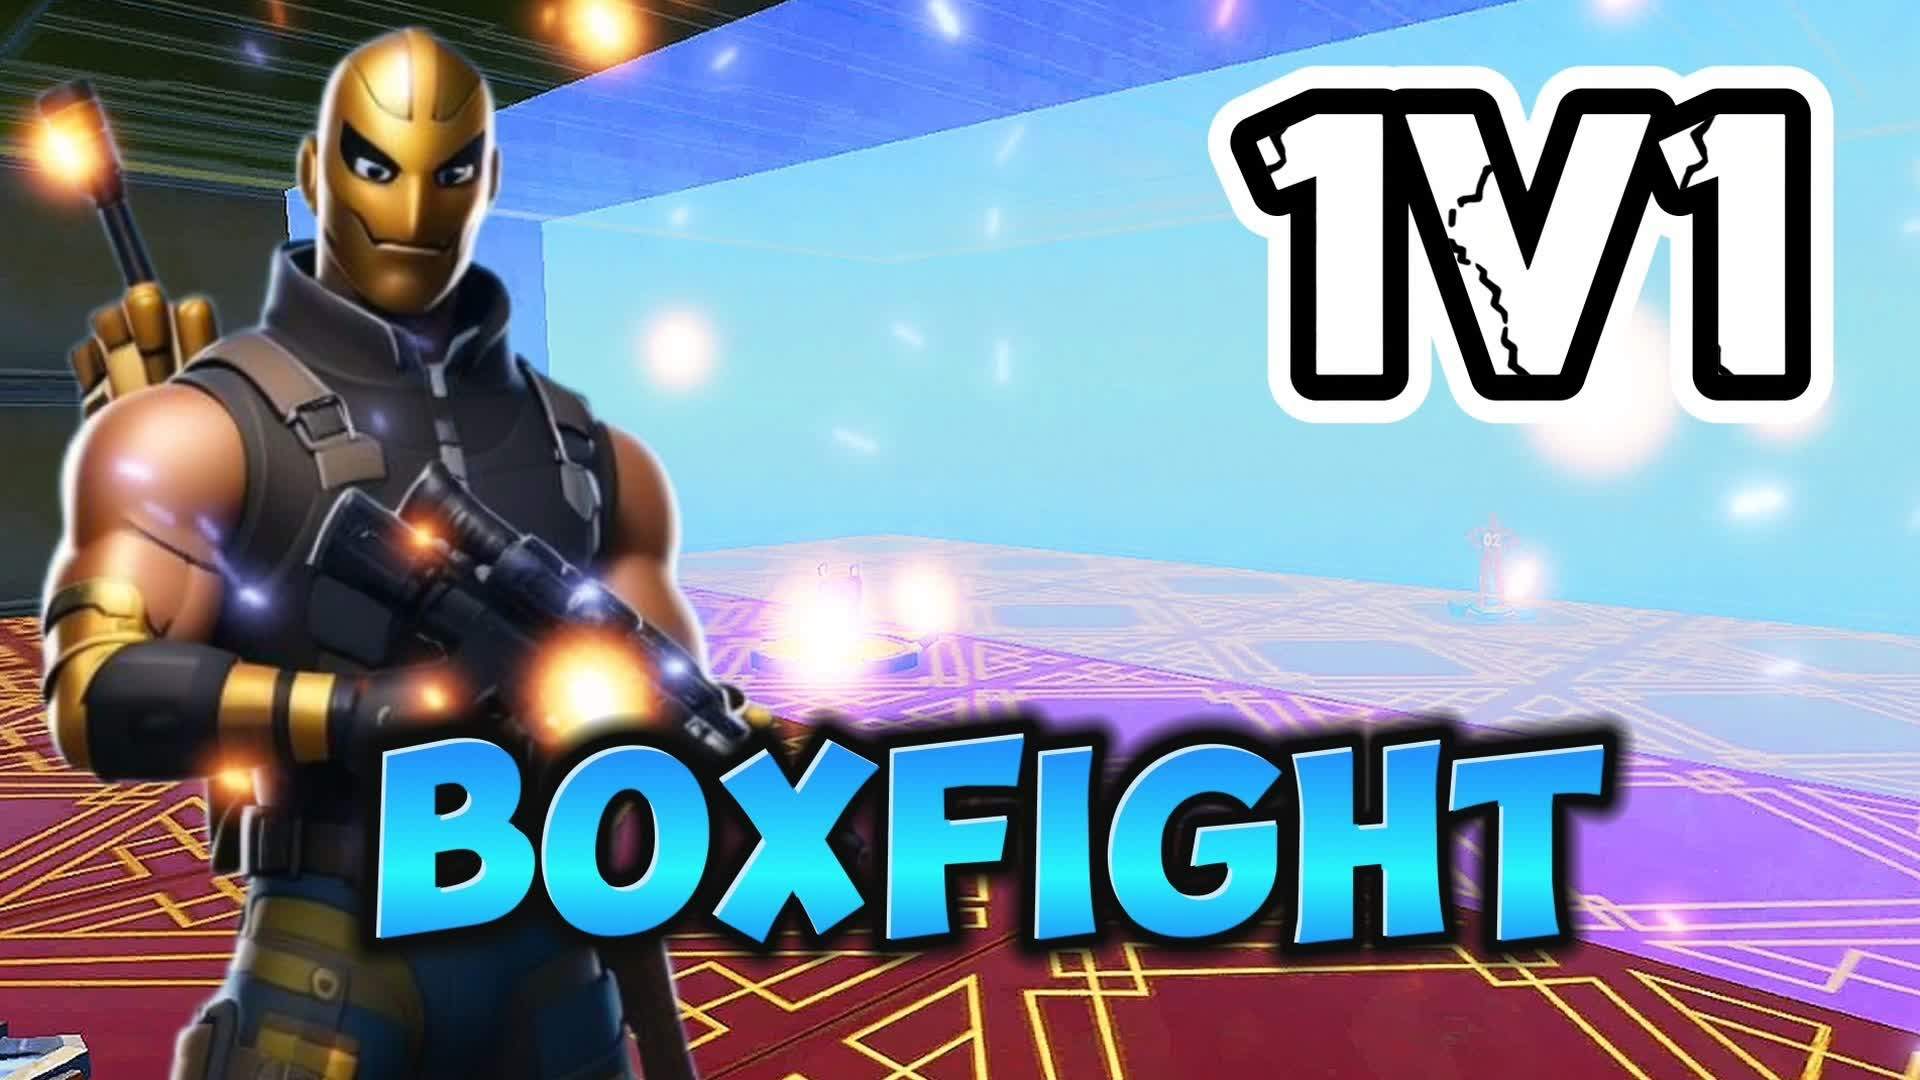 ZxL Boxfight 1v1 0 DELAY